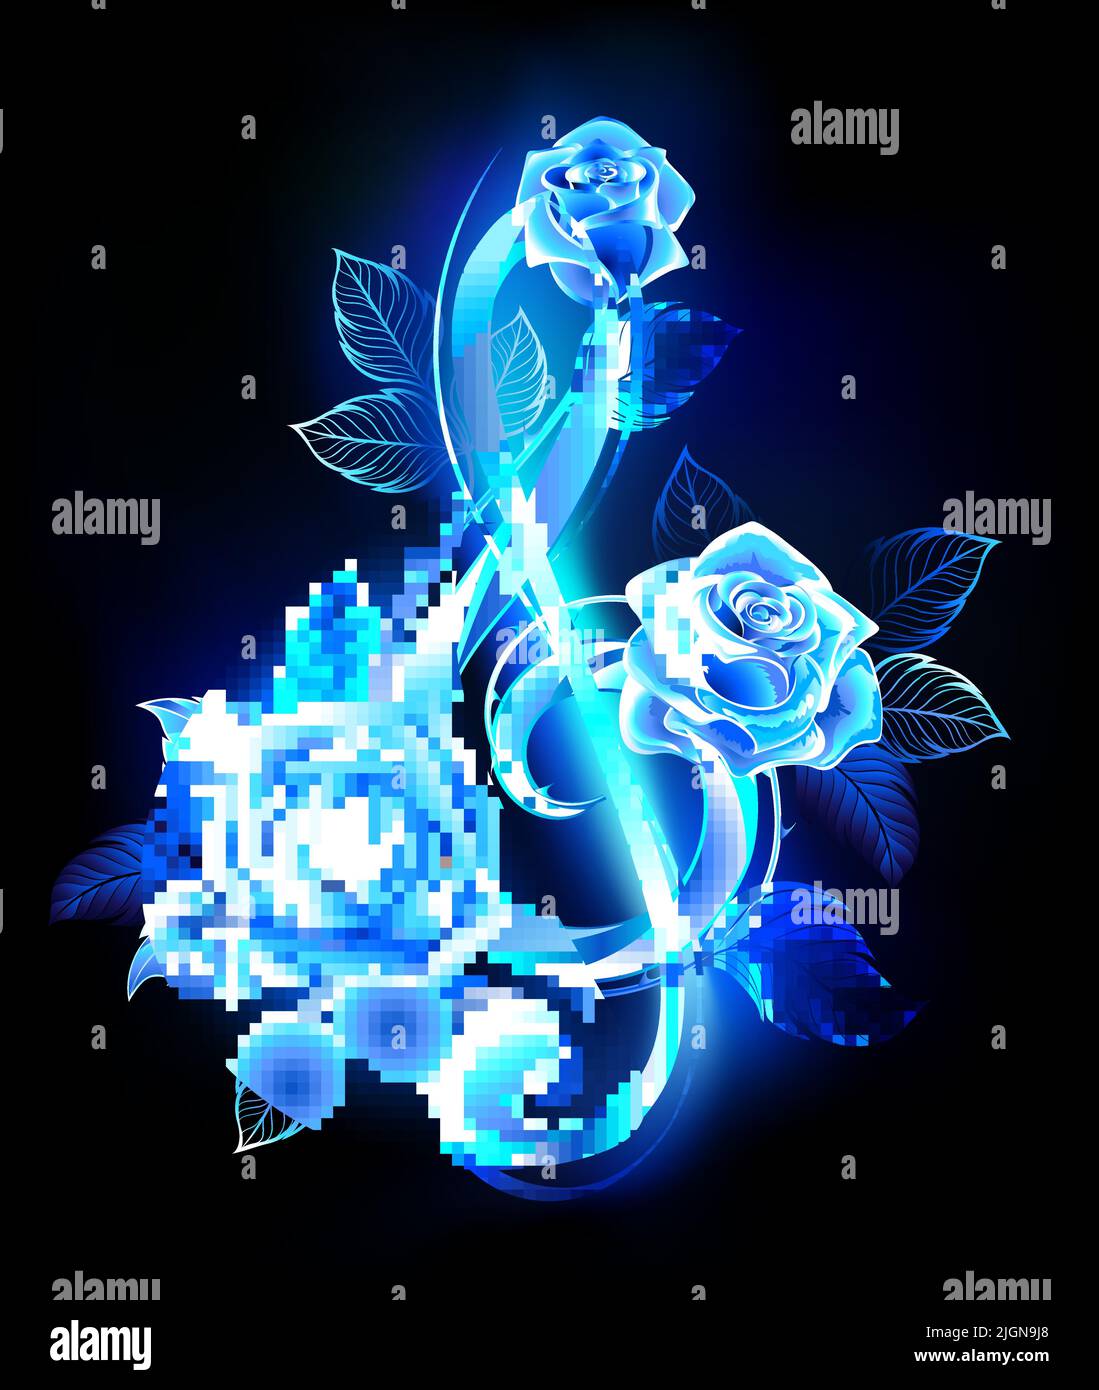 Esfera musical de llama azul decorada con rosas azules en flor sobre fondo negro. Ilustración del Vector